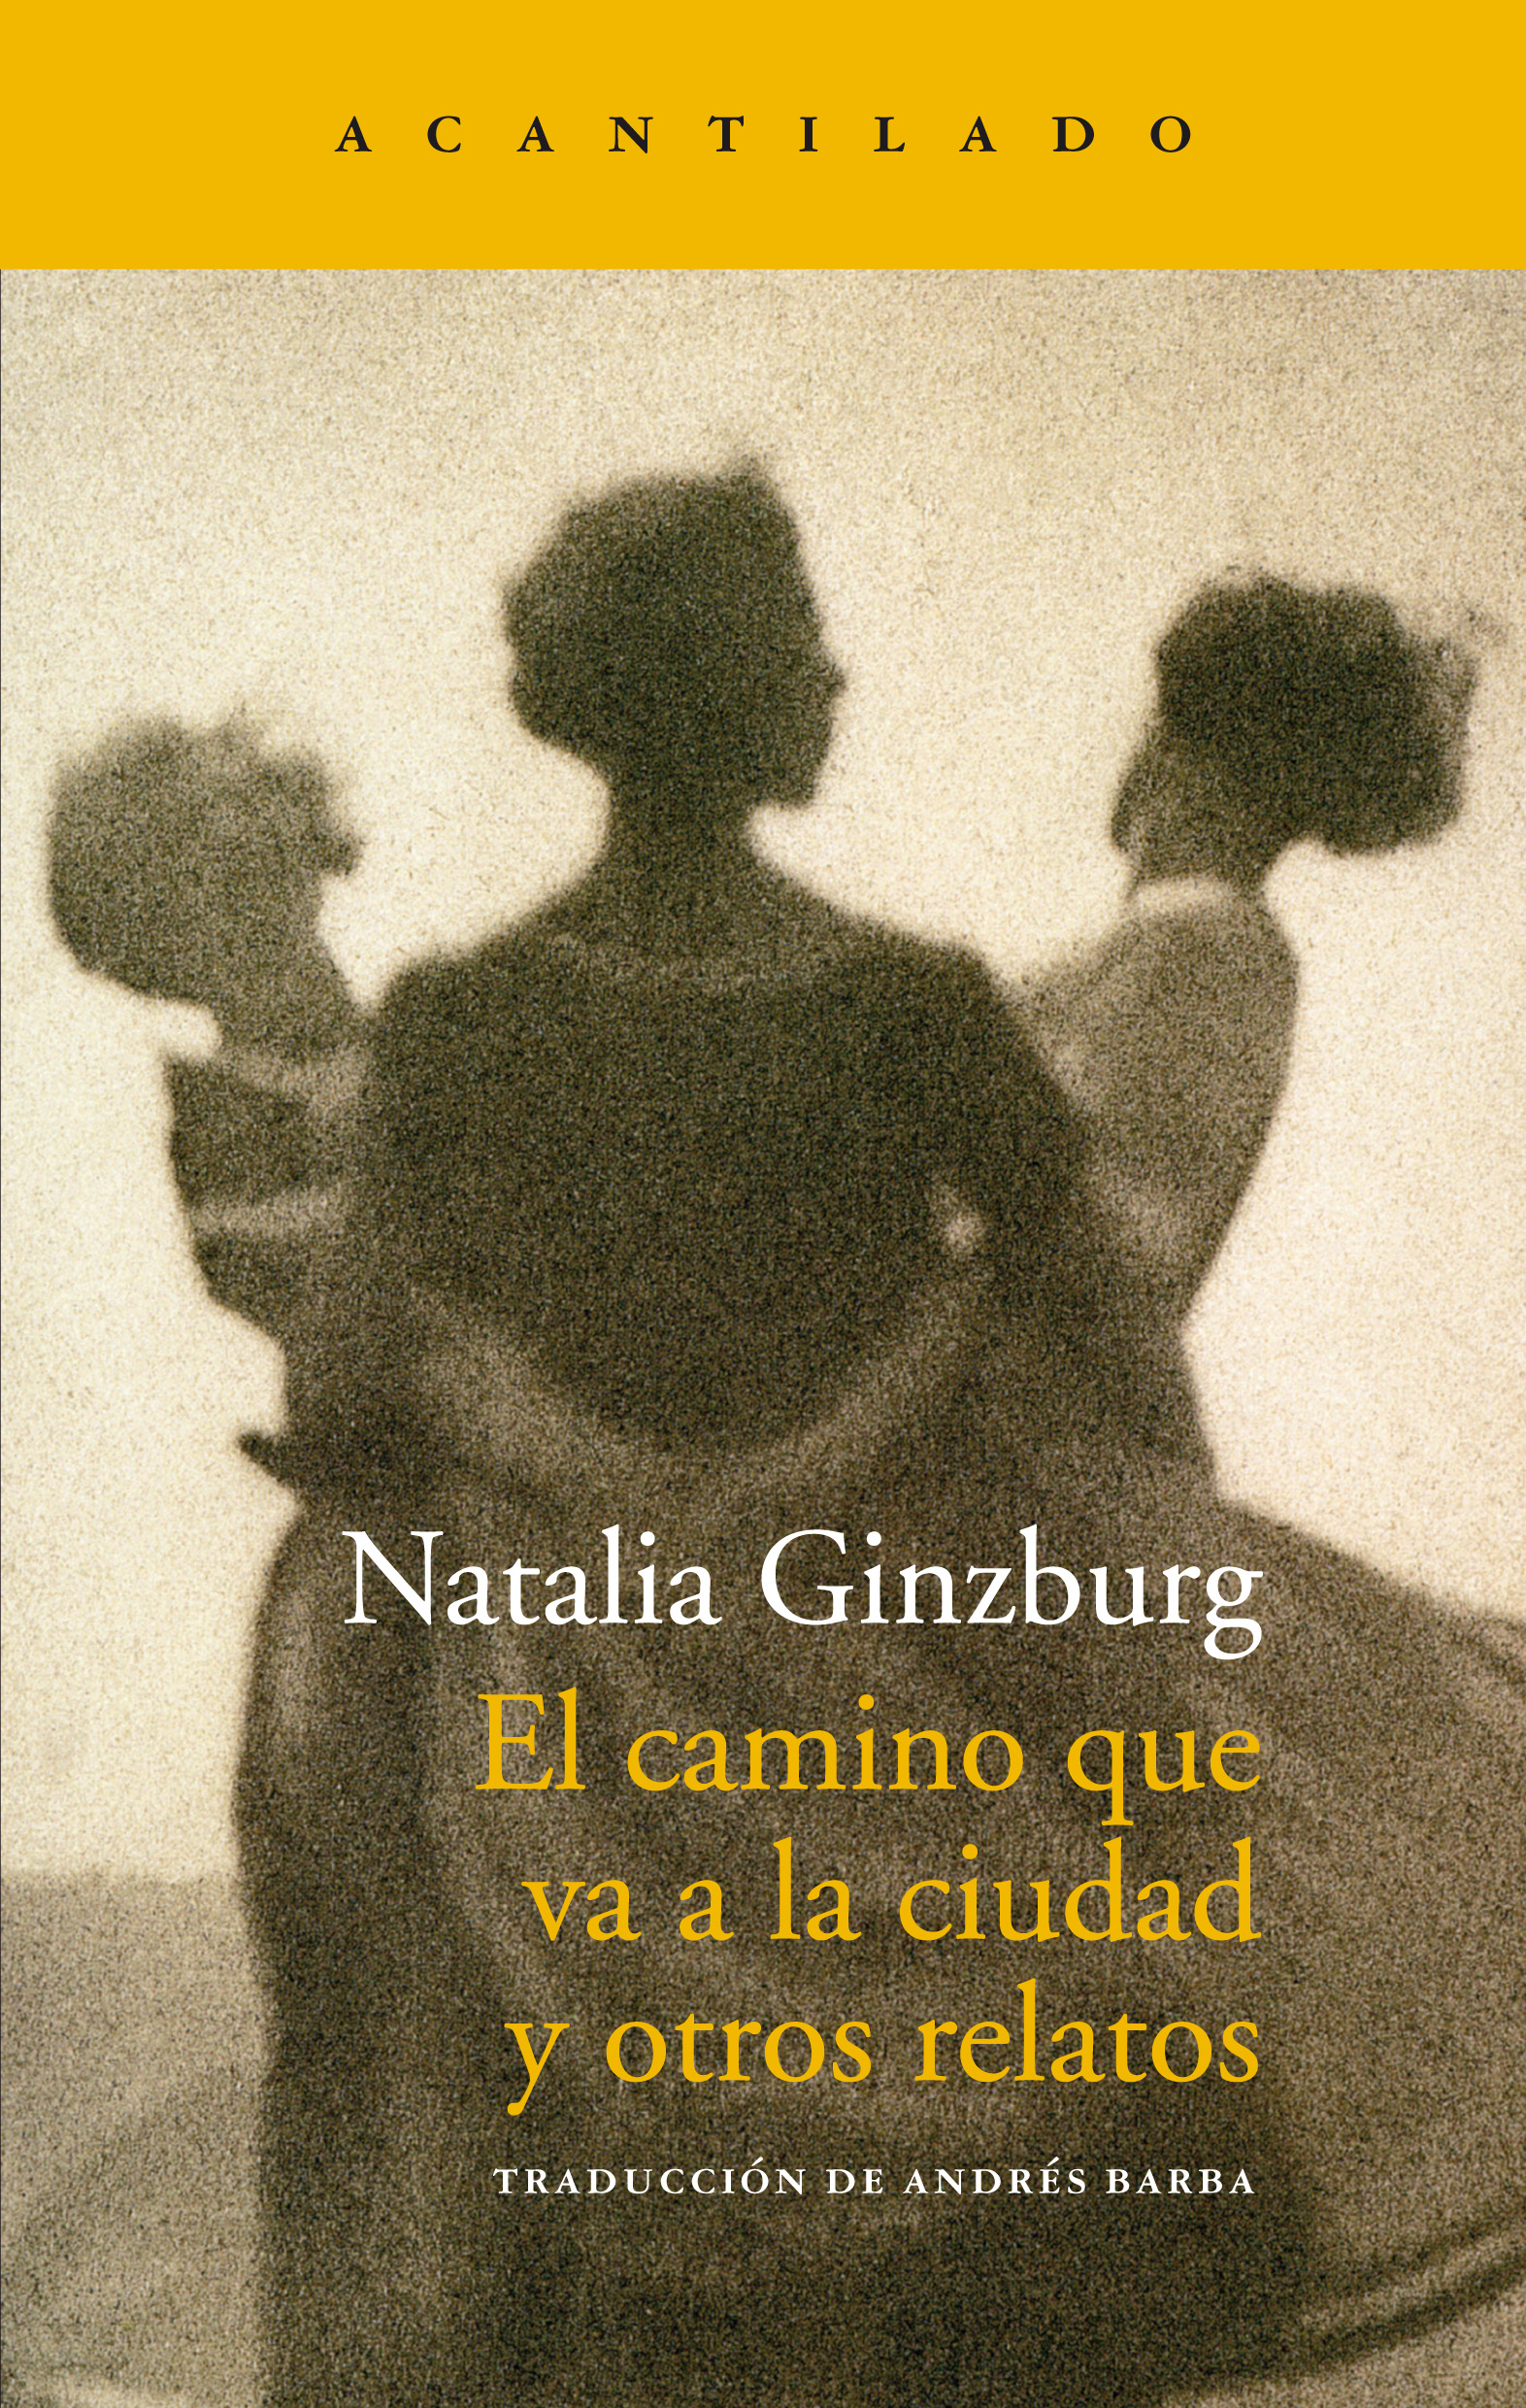 Zenda recomienda: El camino que va a la ciudad, de Natalia Ginzburg